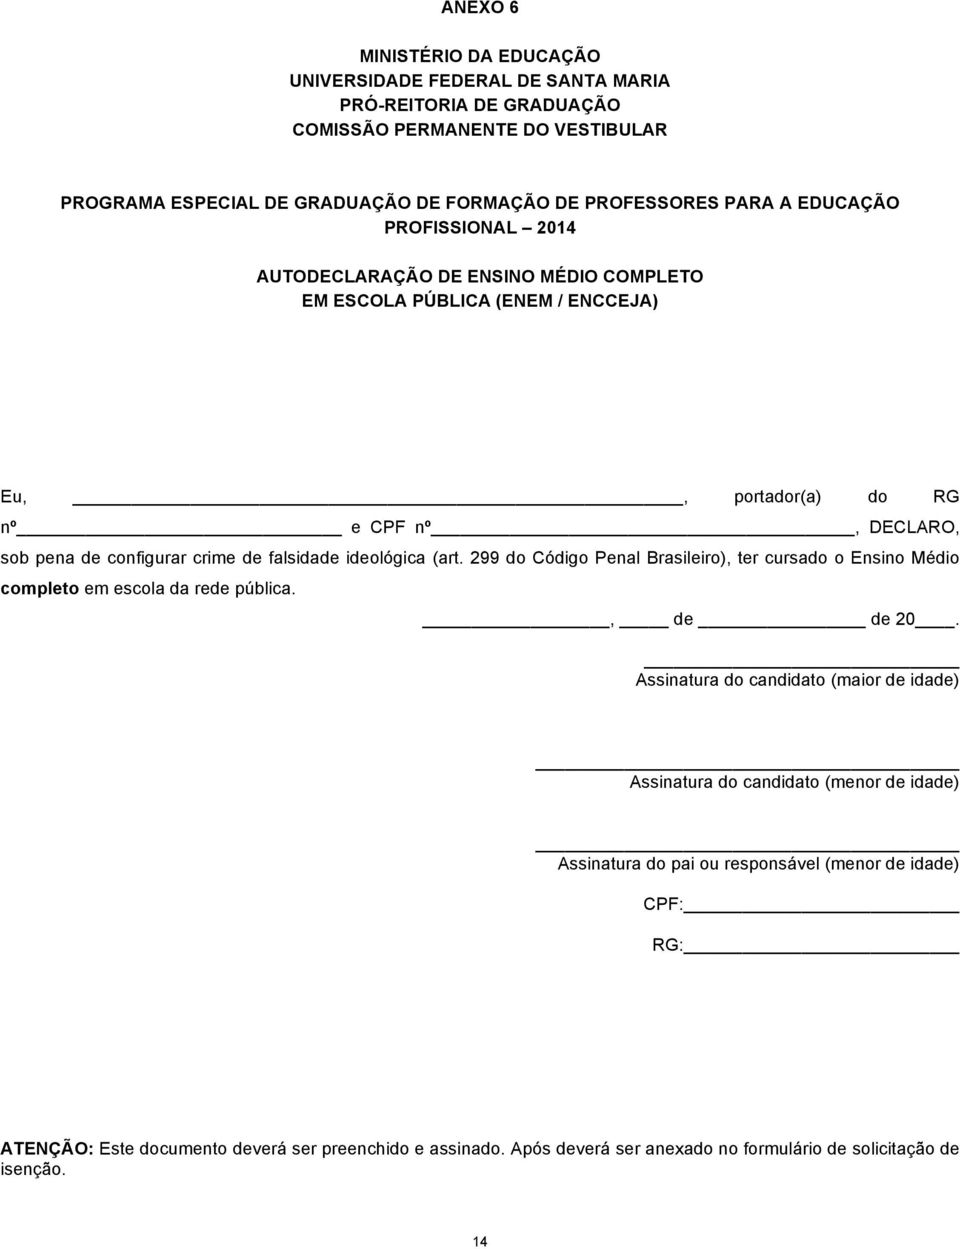 ideológica (art. 299 do Código Penal Brasileiro), ter cursado o Ensino Médio completo em escola da rede pública., de de 20.